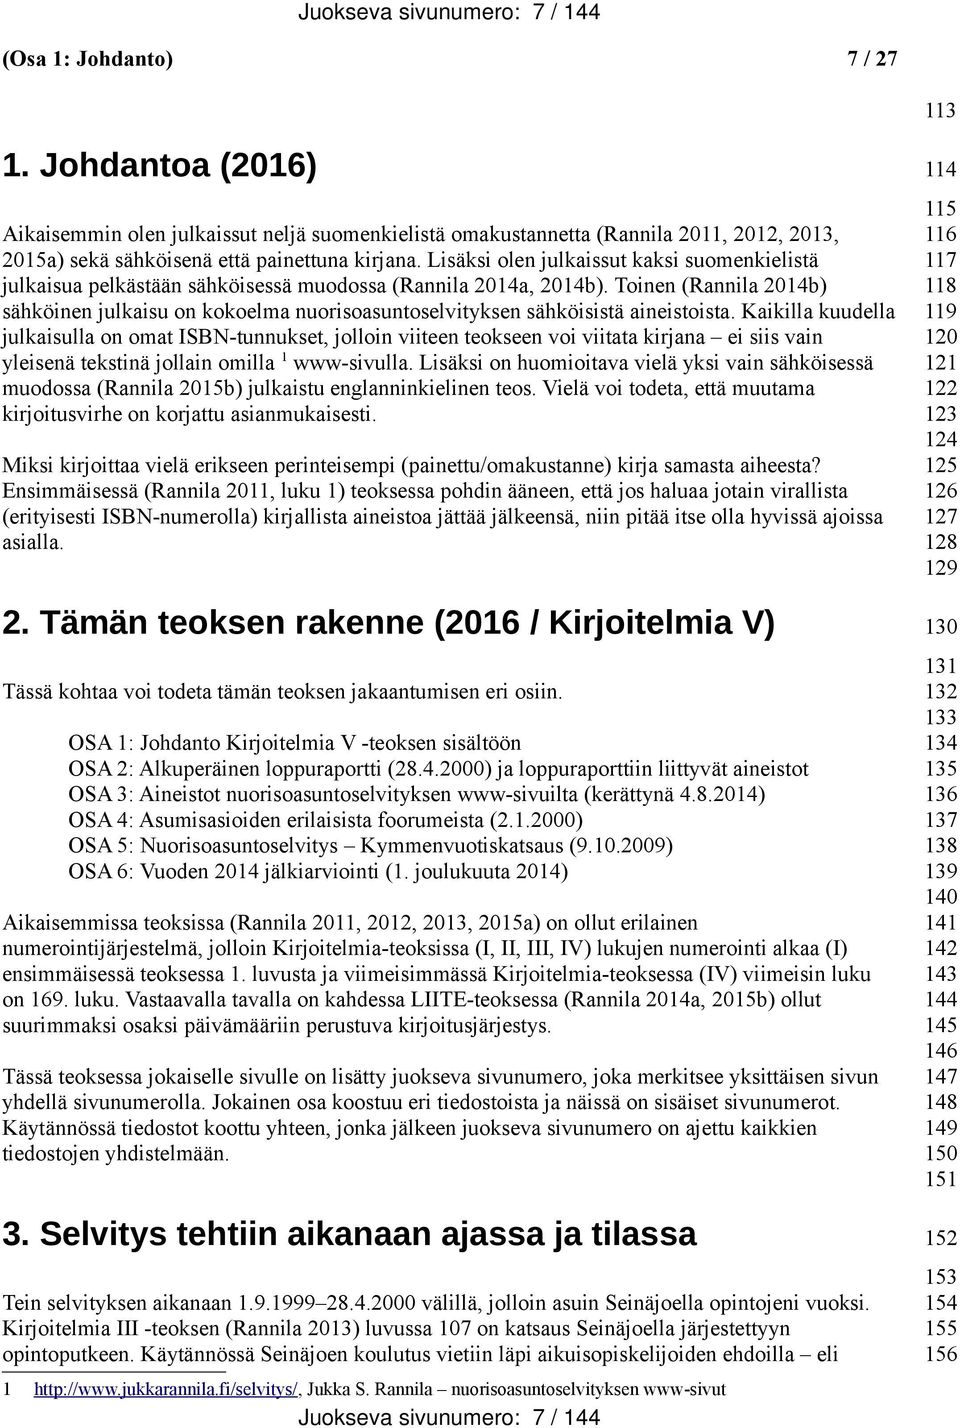 Lisäksi olen julkaissut kaksi suomenkielistä julkaisua pelkästään sähköisessä muodossa (Rannila 2014a, 2014b).